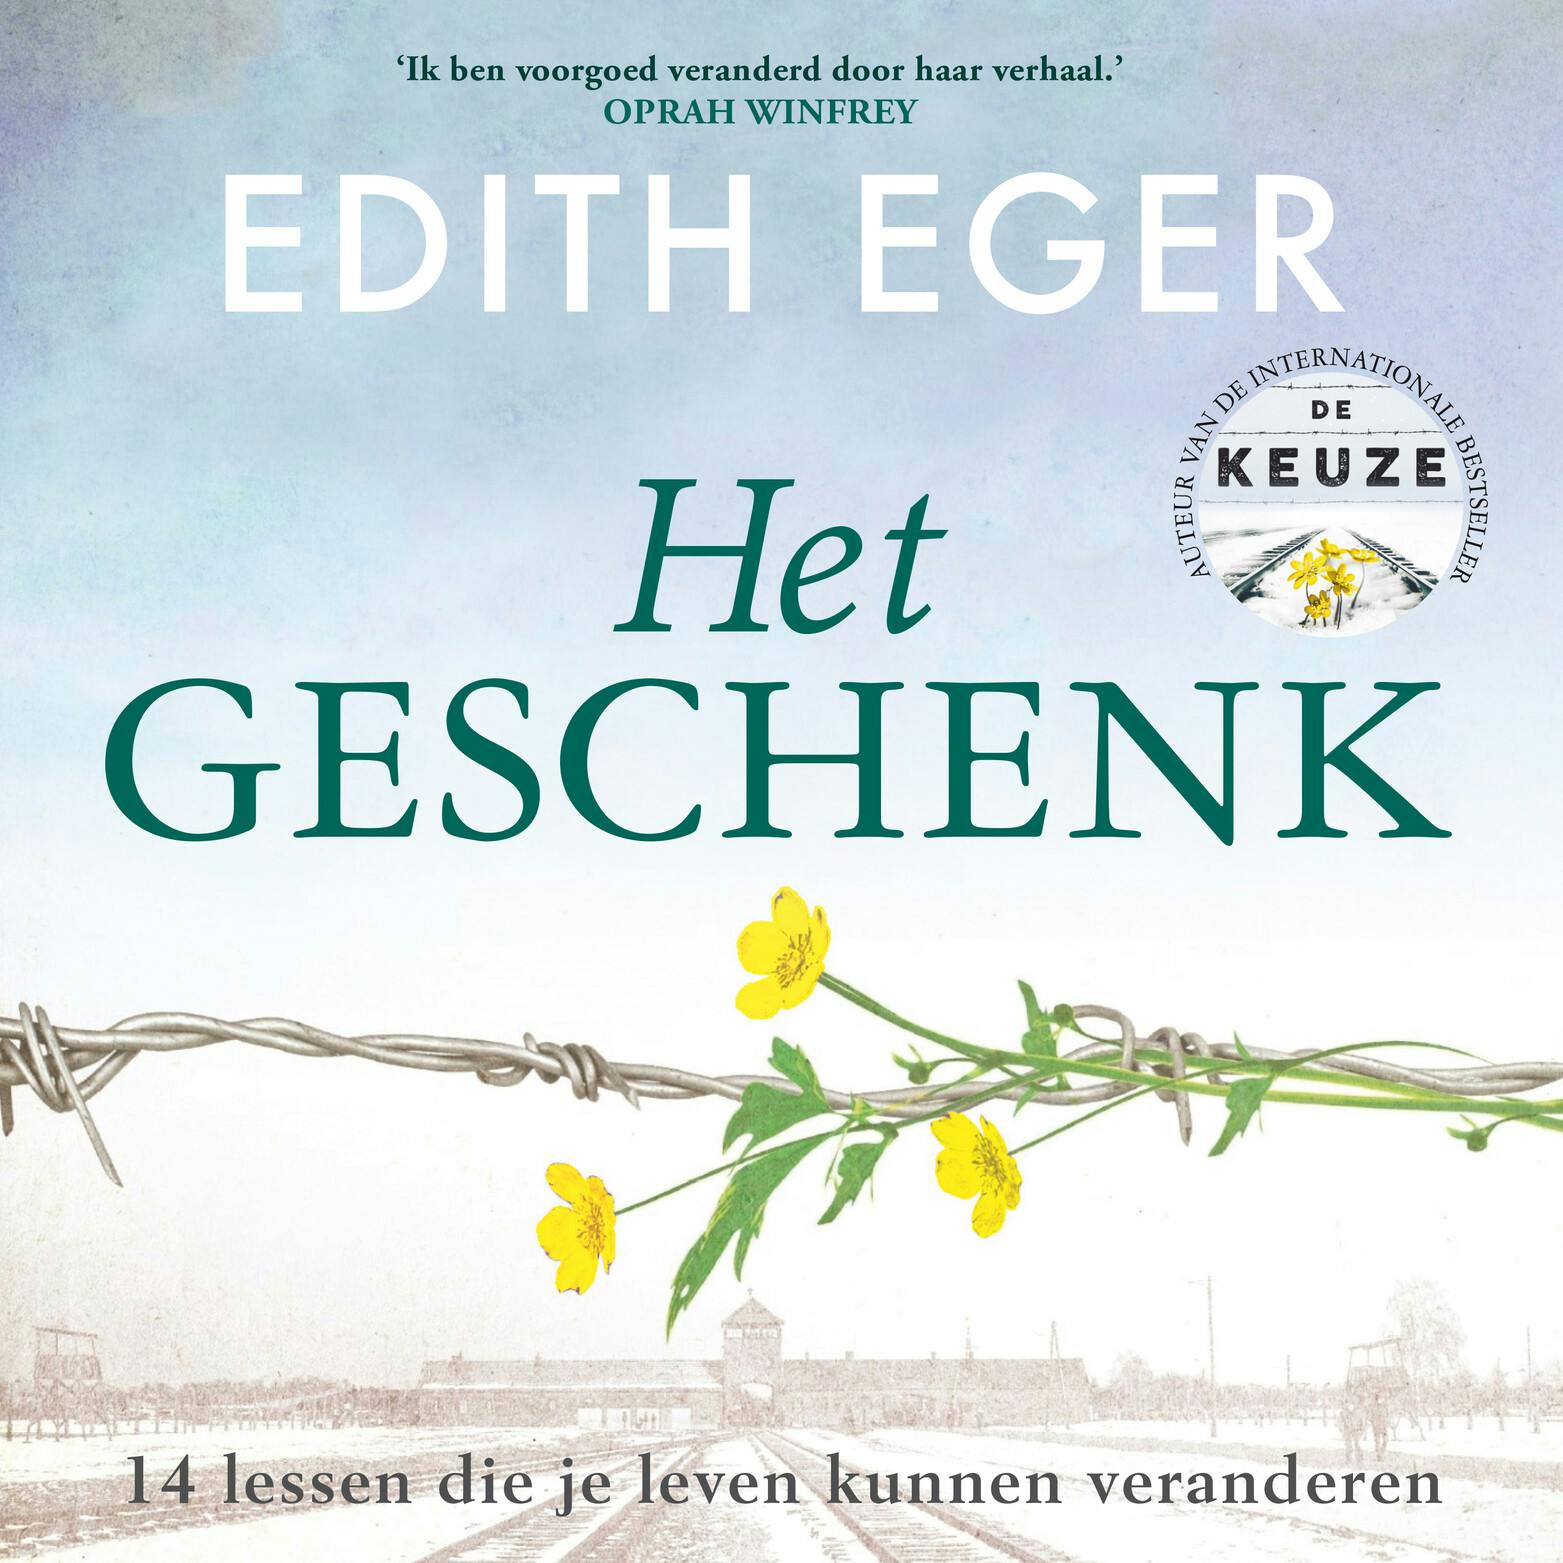 Het geschenk - Edith Eger